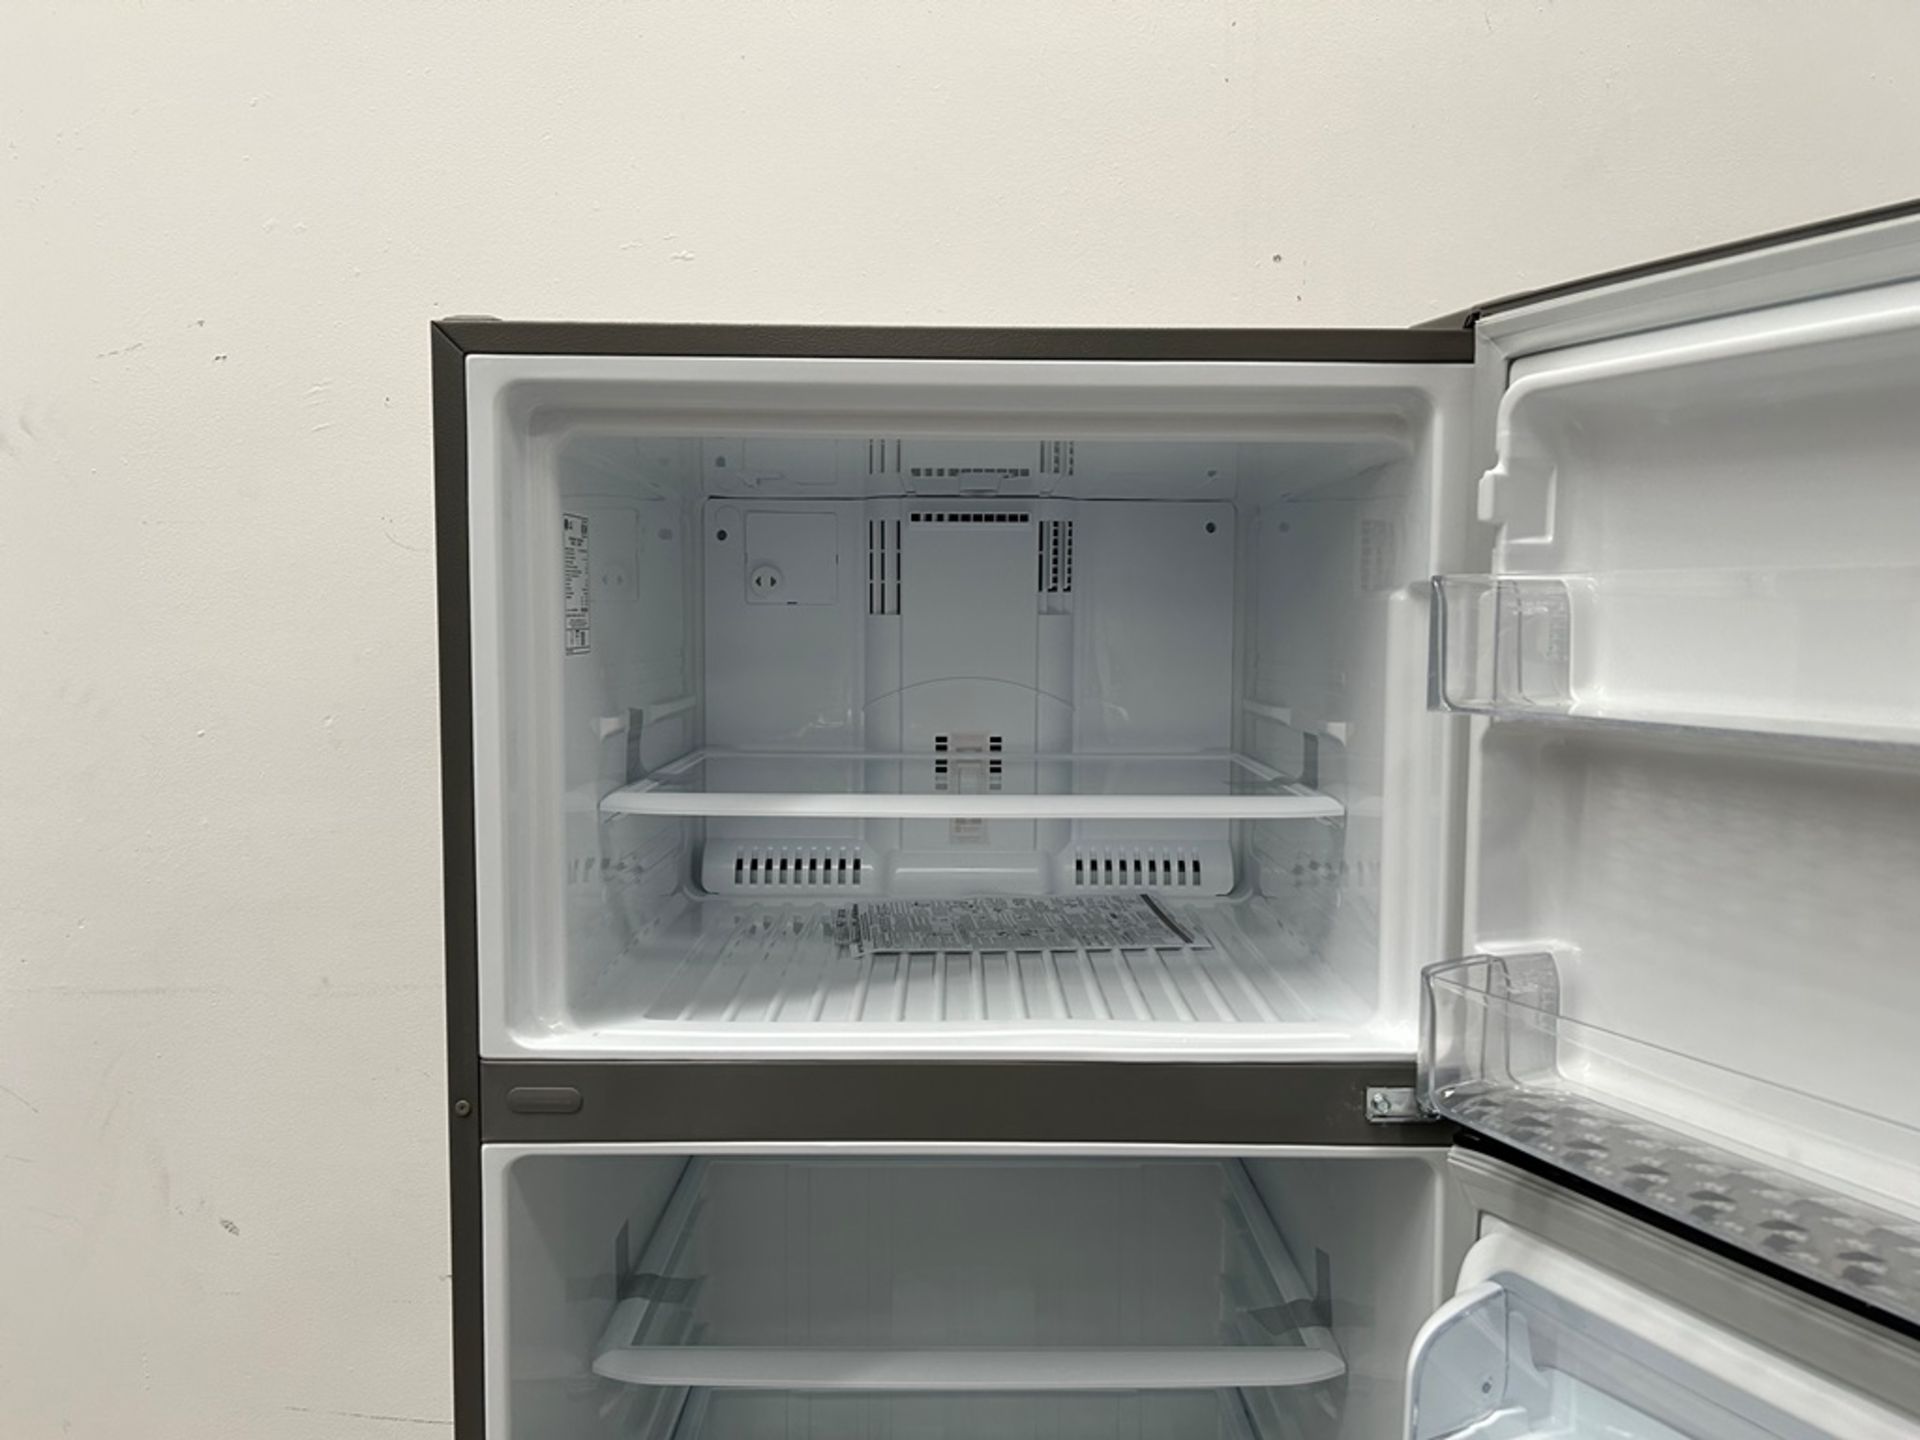 (NUEVO) Refrigerador Marca LG, Modelo LT57BPSX, Serie 29679, Color GRIS - Image 6 of 11